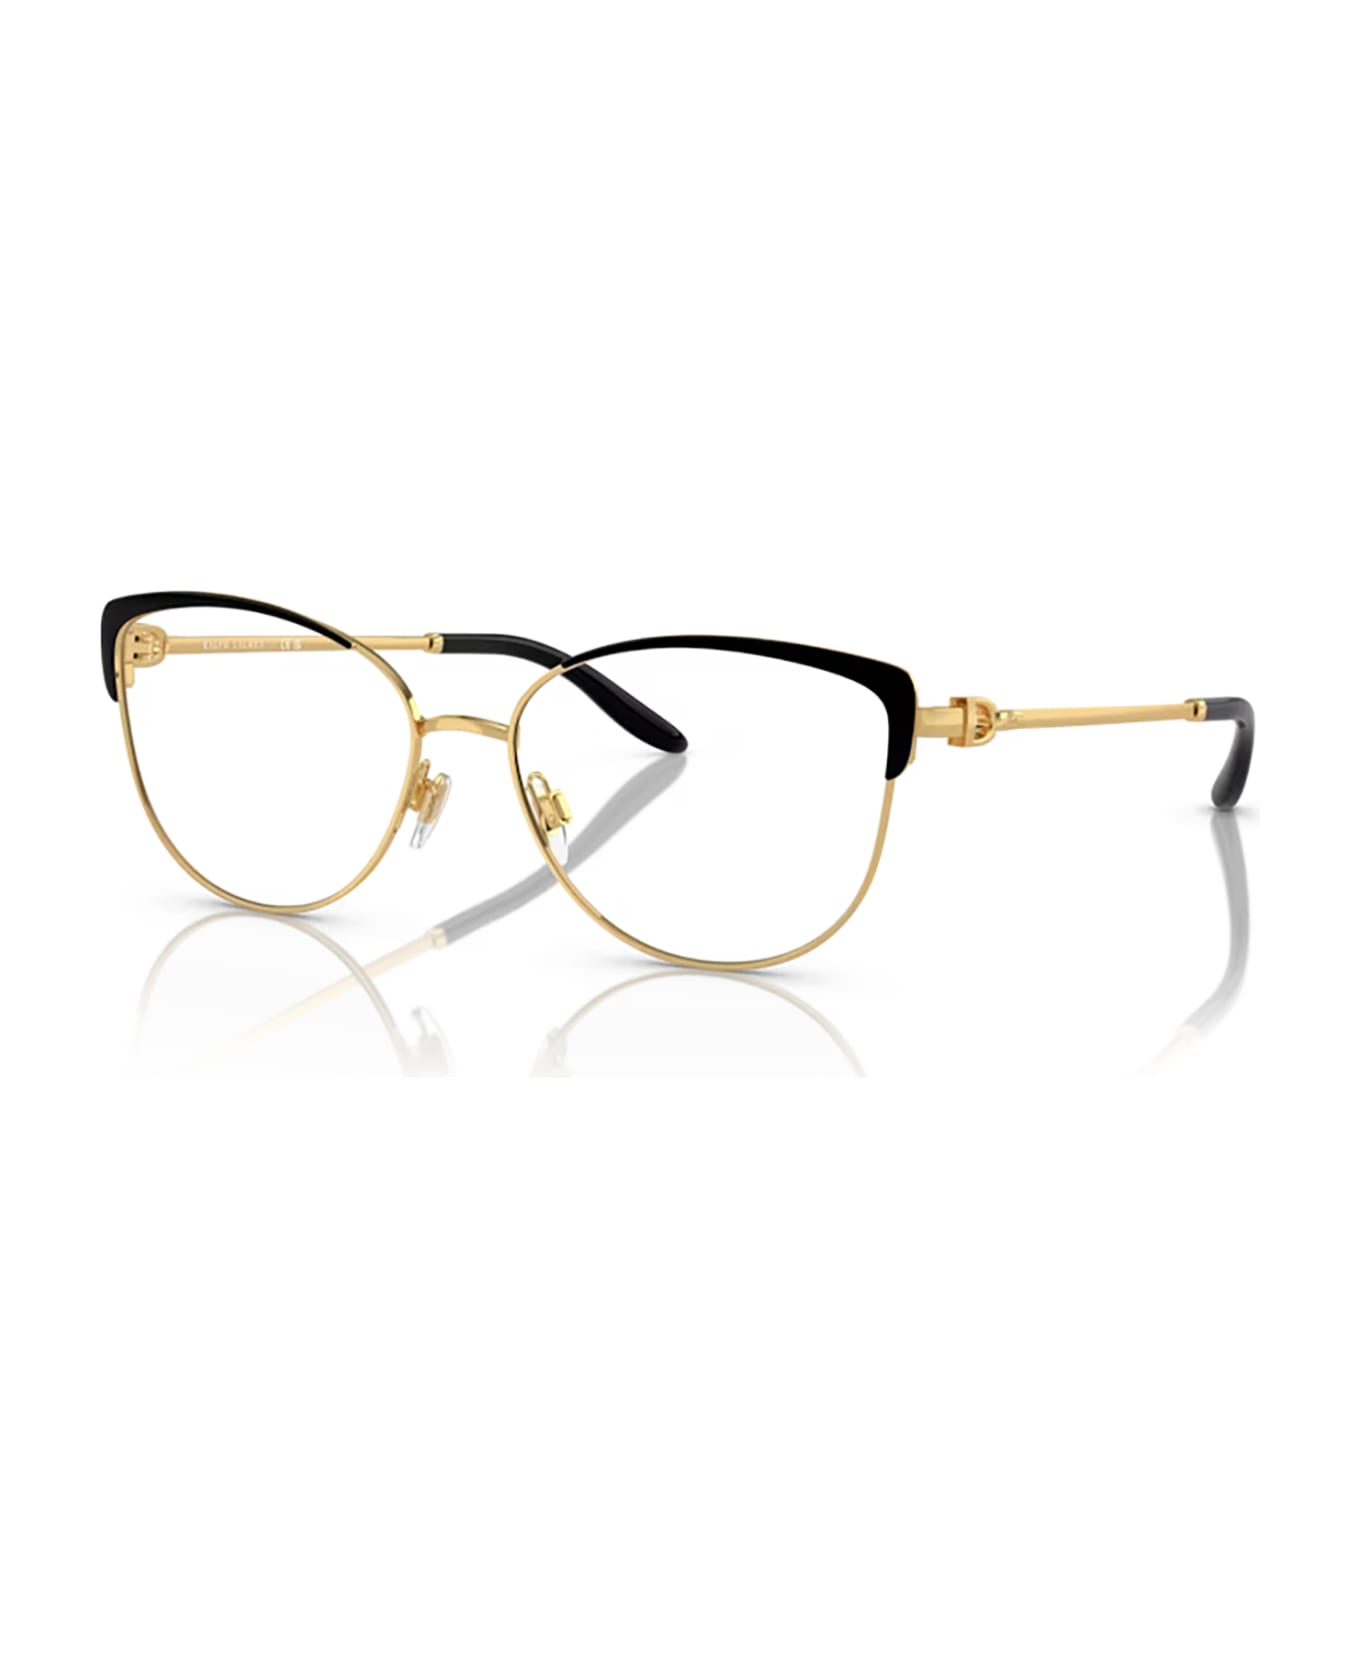 Ralph Lauren Rl5123 Black / Gold Glasses - Black / Gold